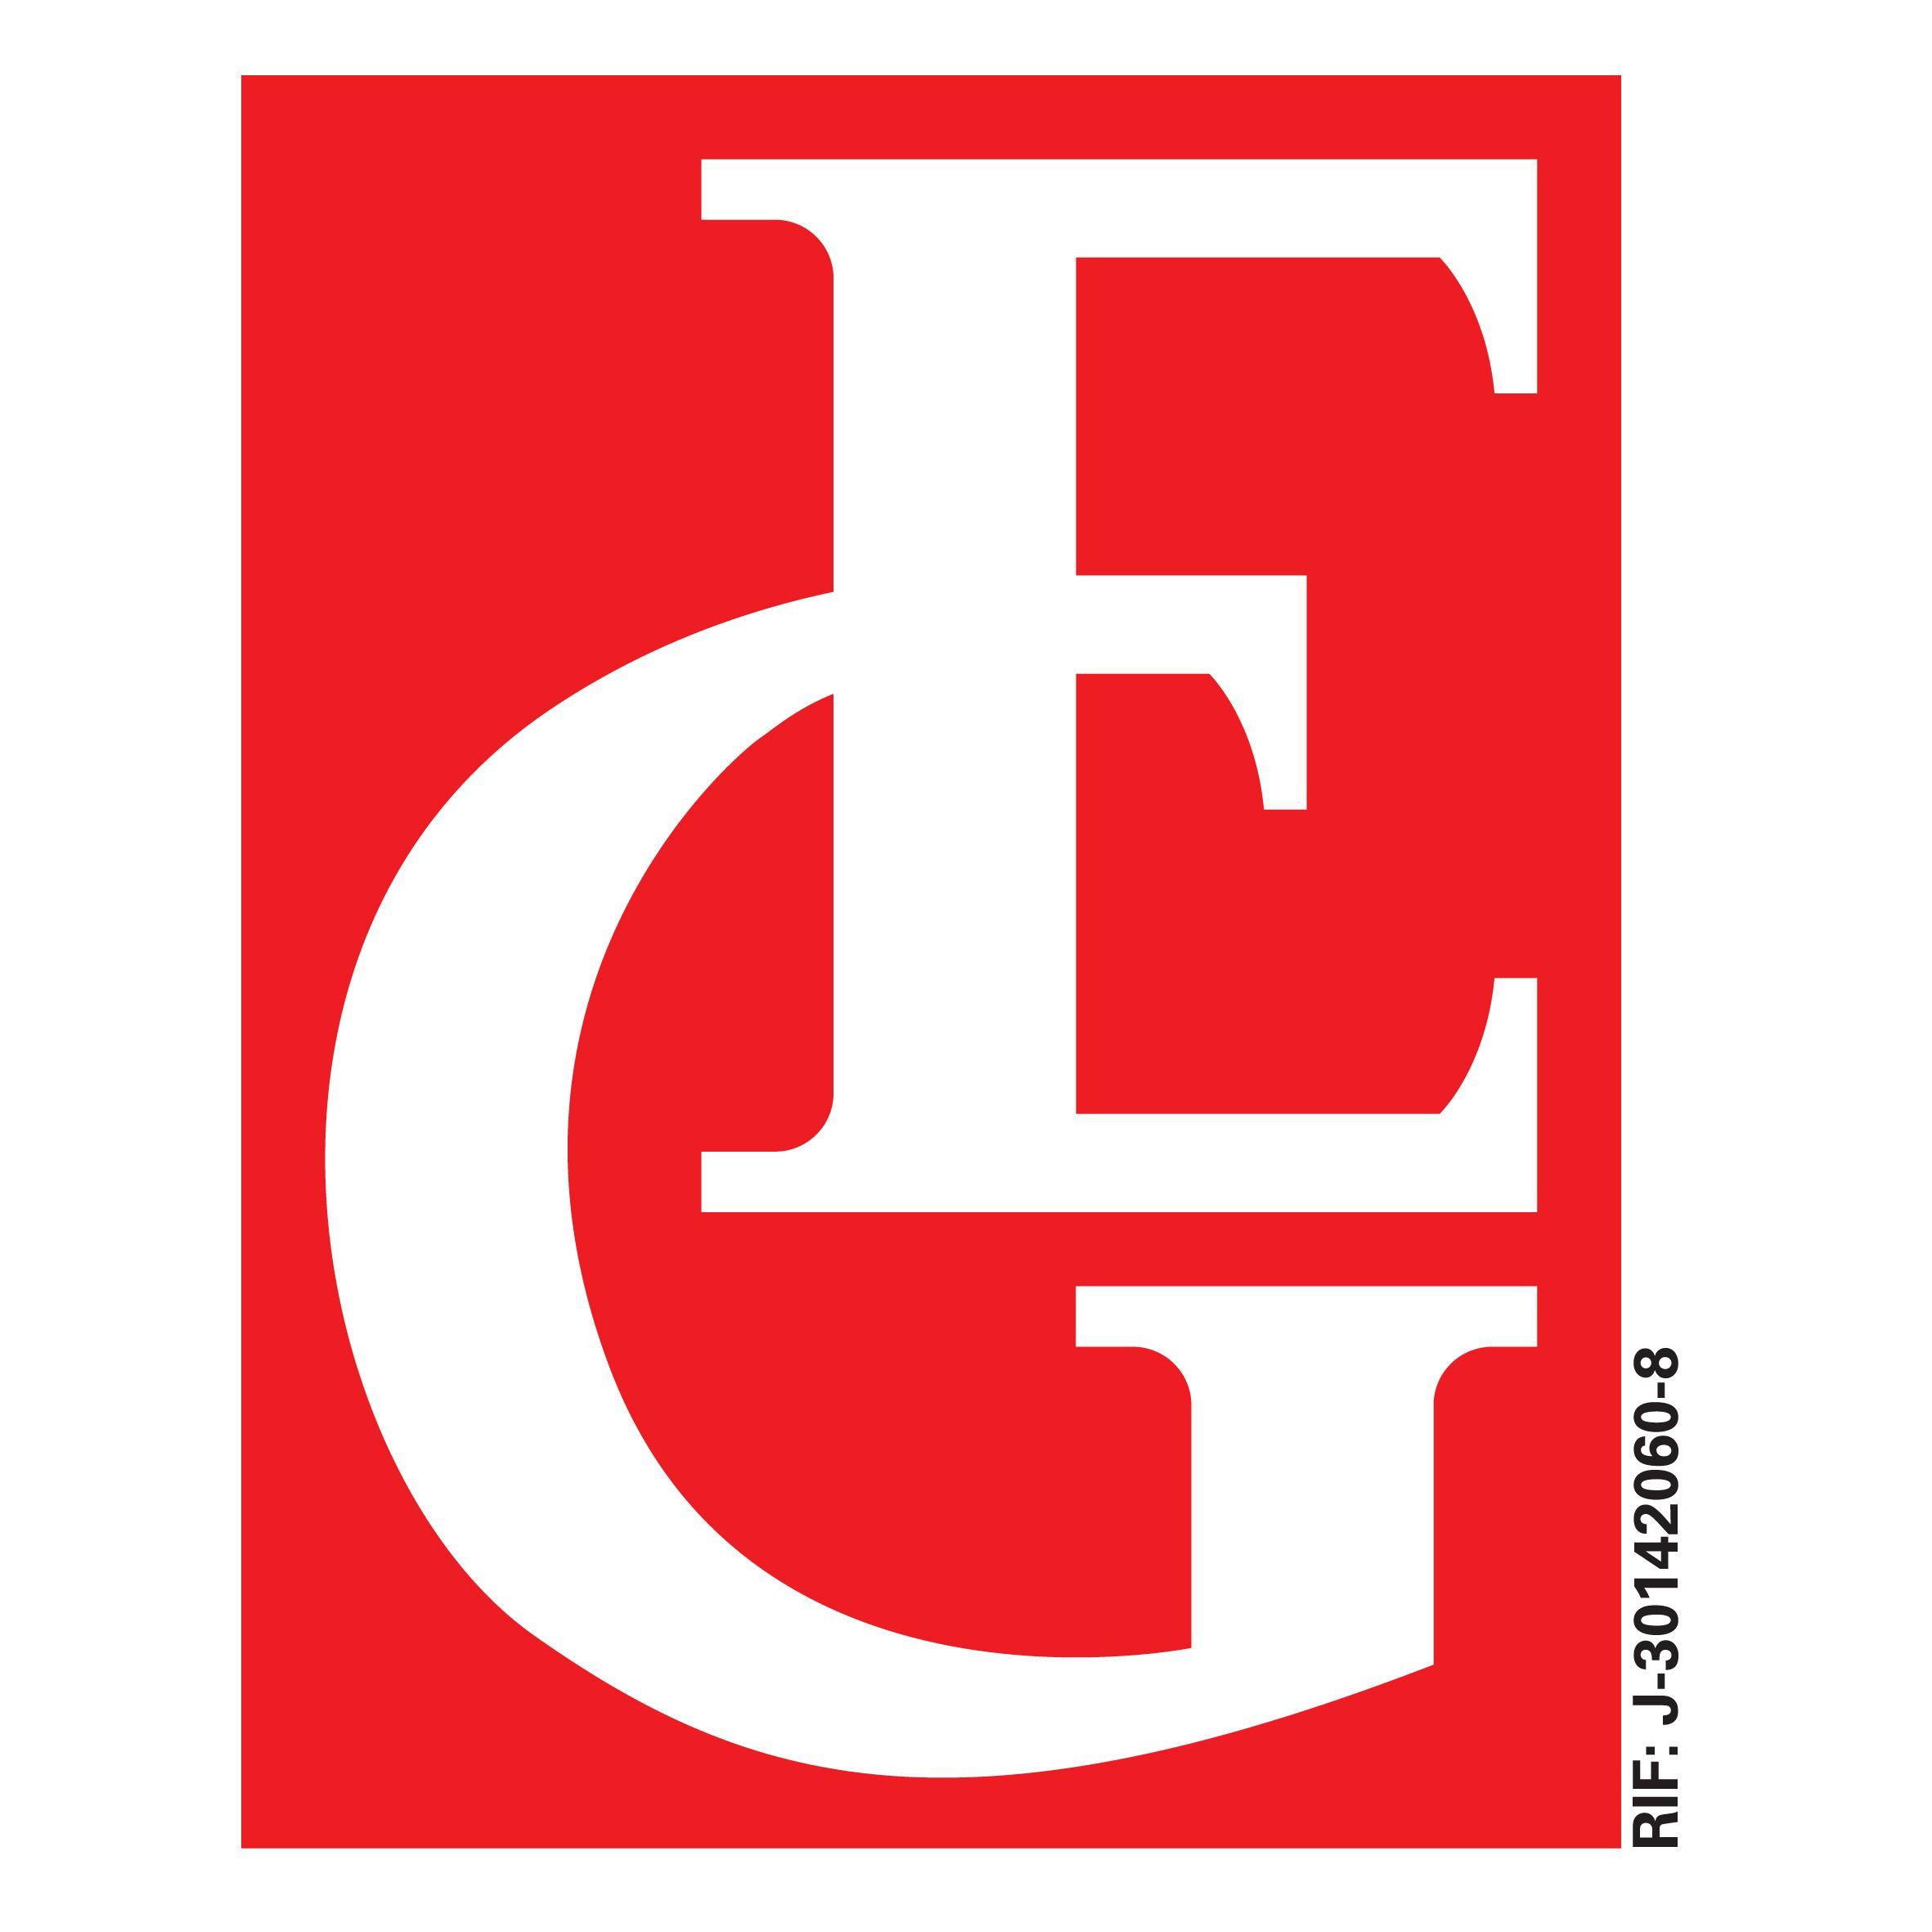 Excelsior Logo